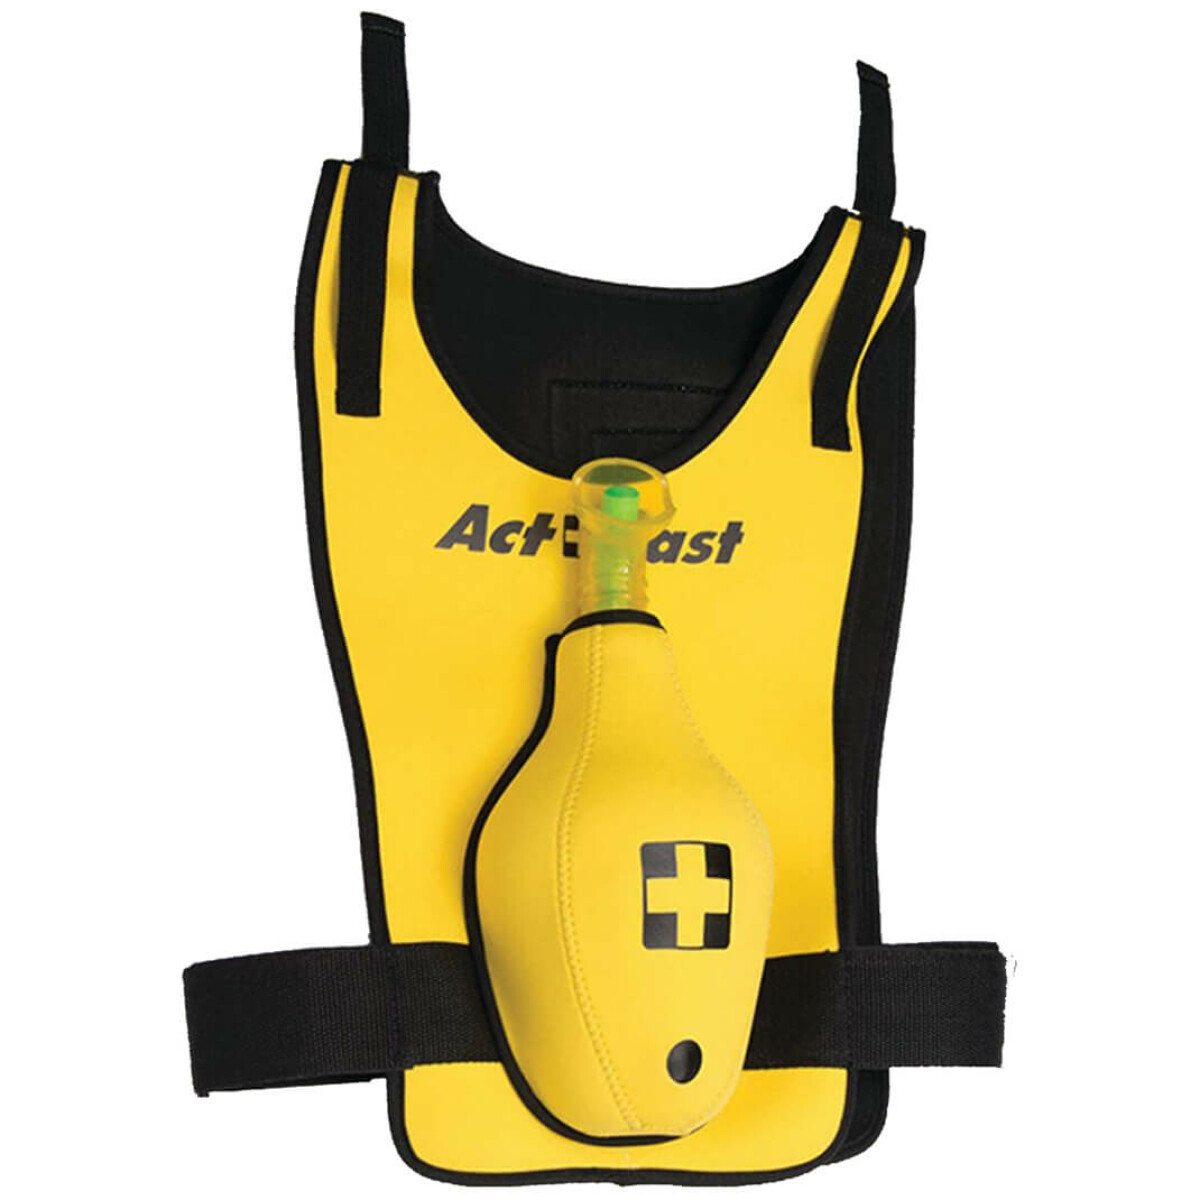 Act Fast (Heimlich Manoeuvre trainer) Kinder - AED-Partner Shop